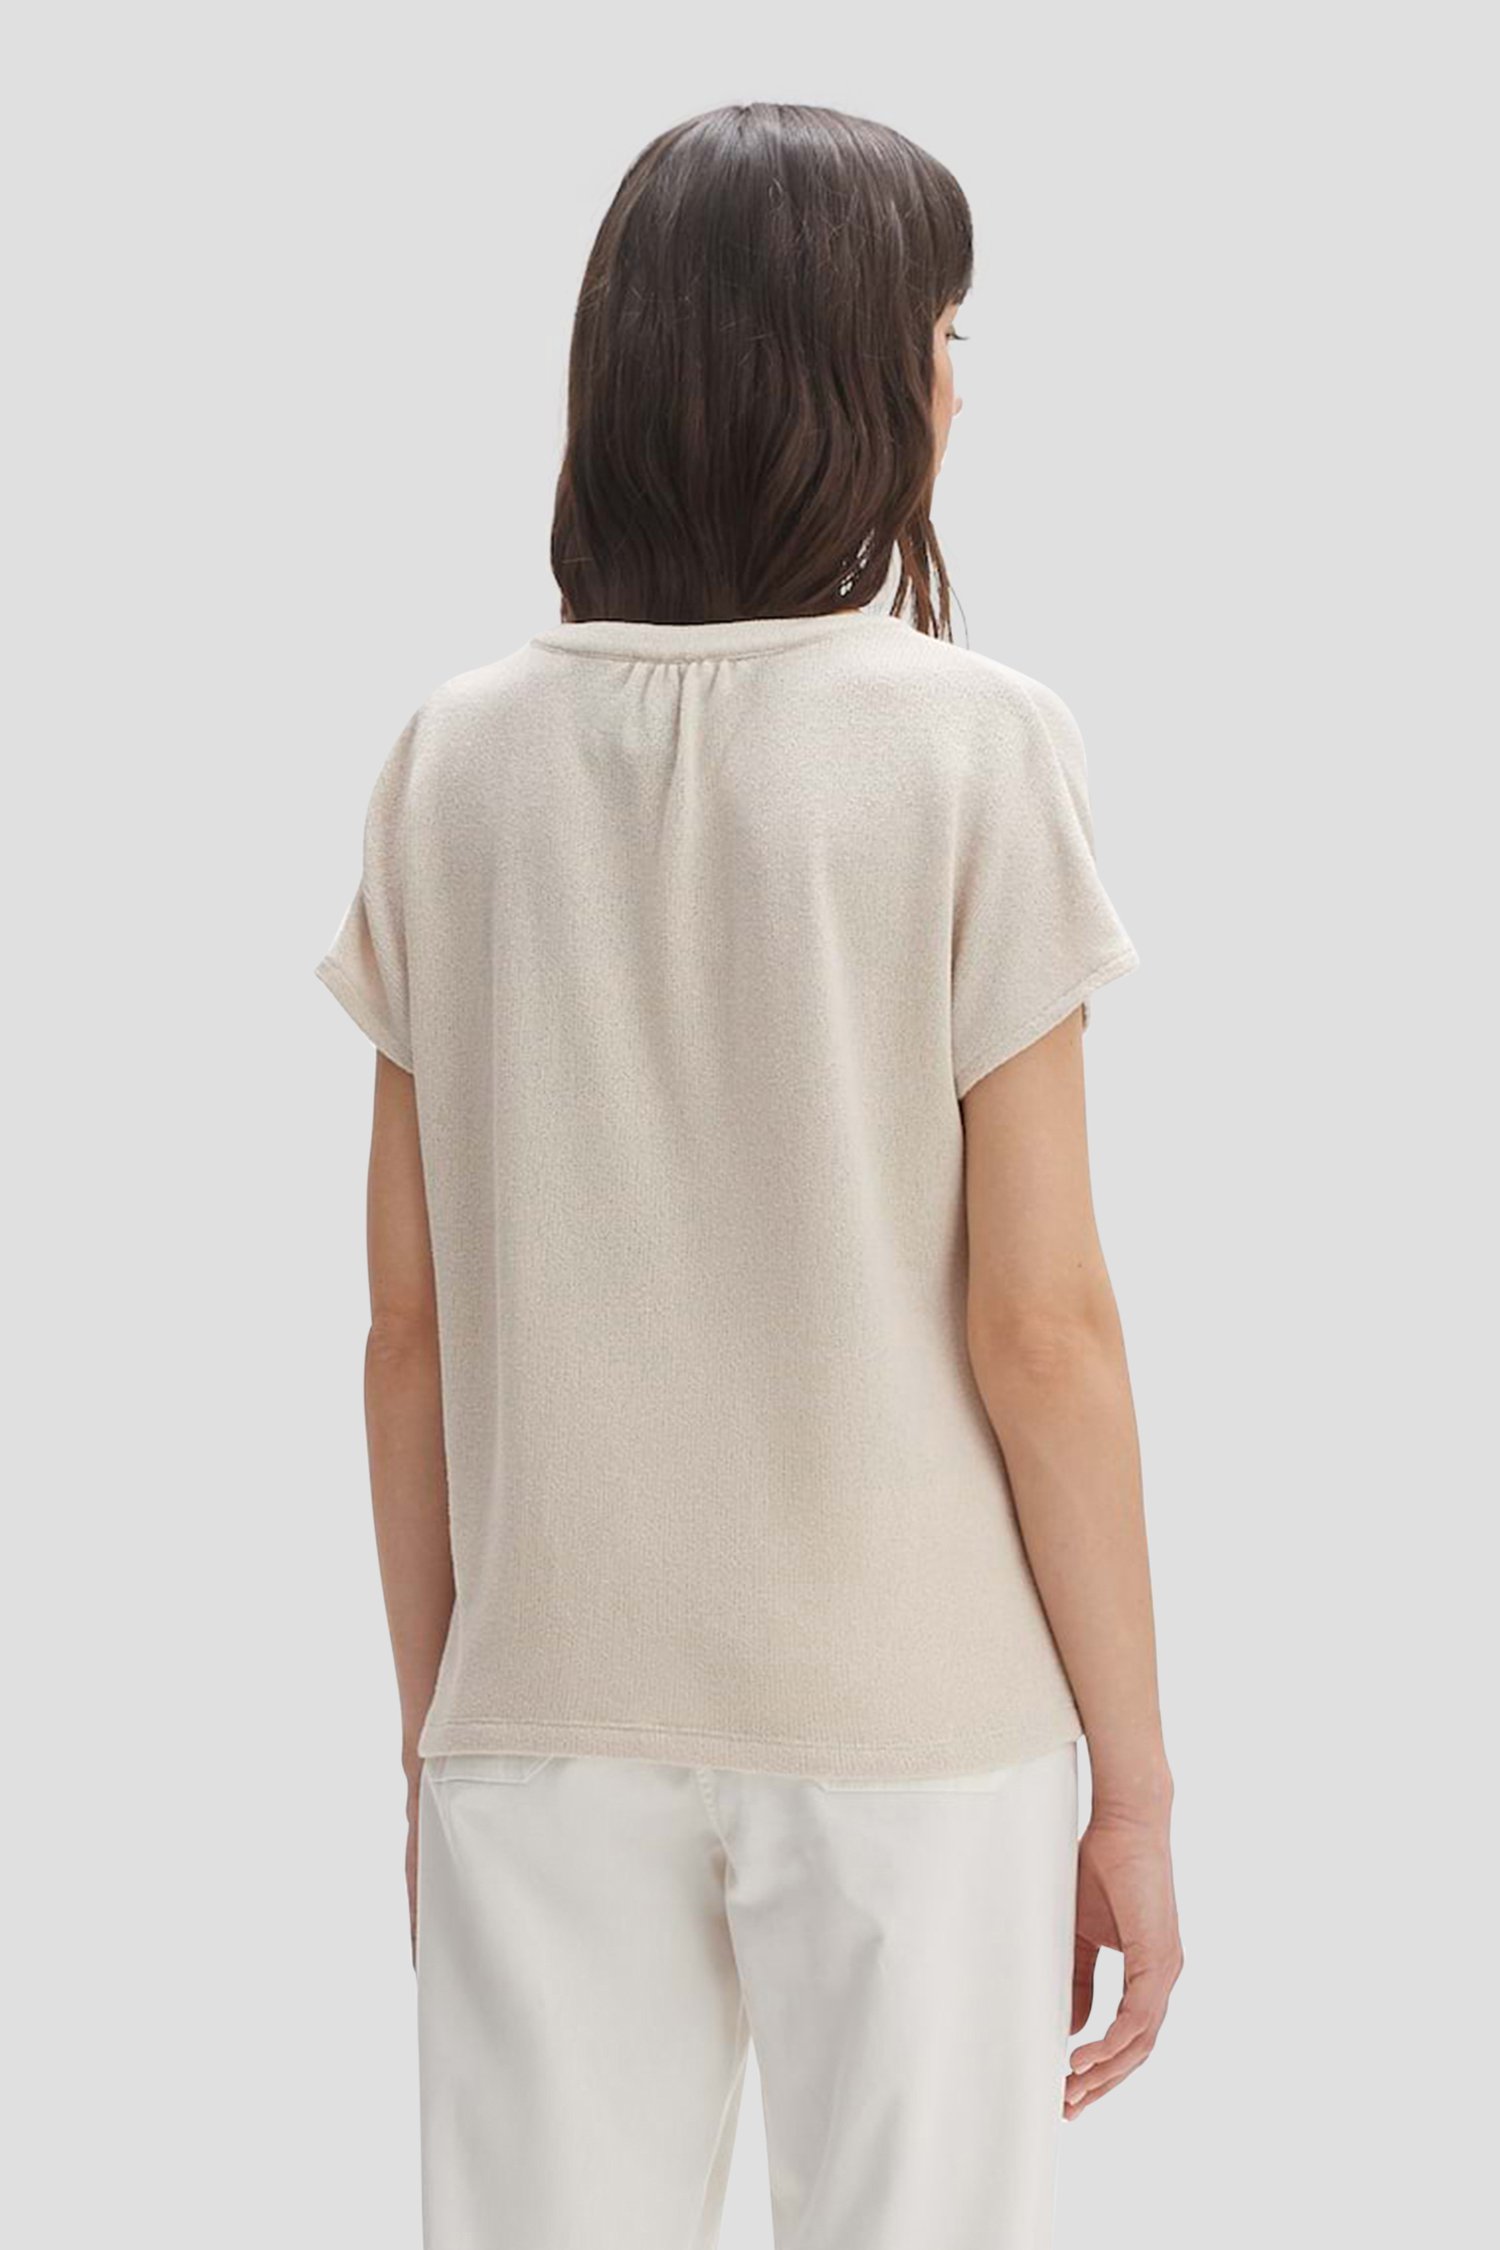 T-shirt beige en maille fine de Opus pour Femmes